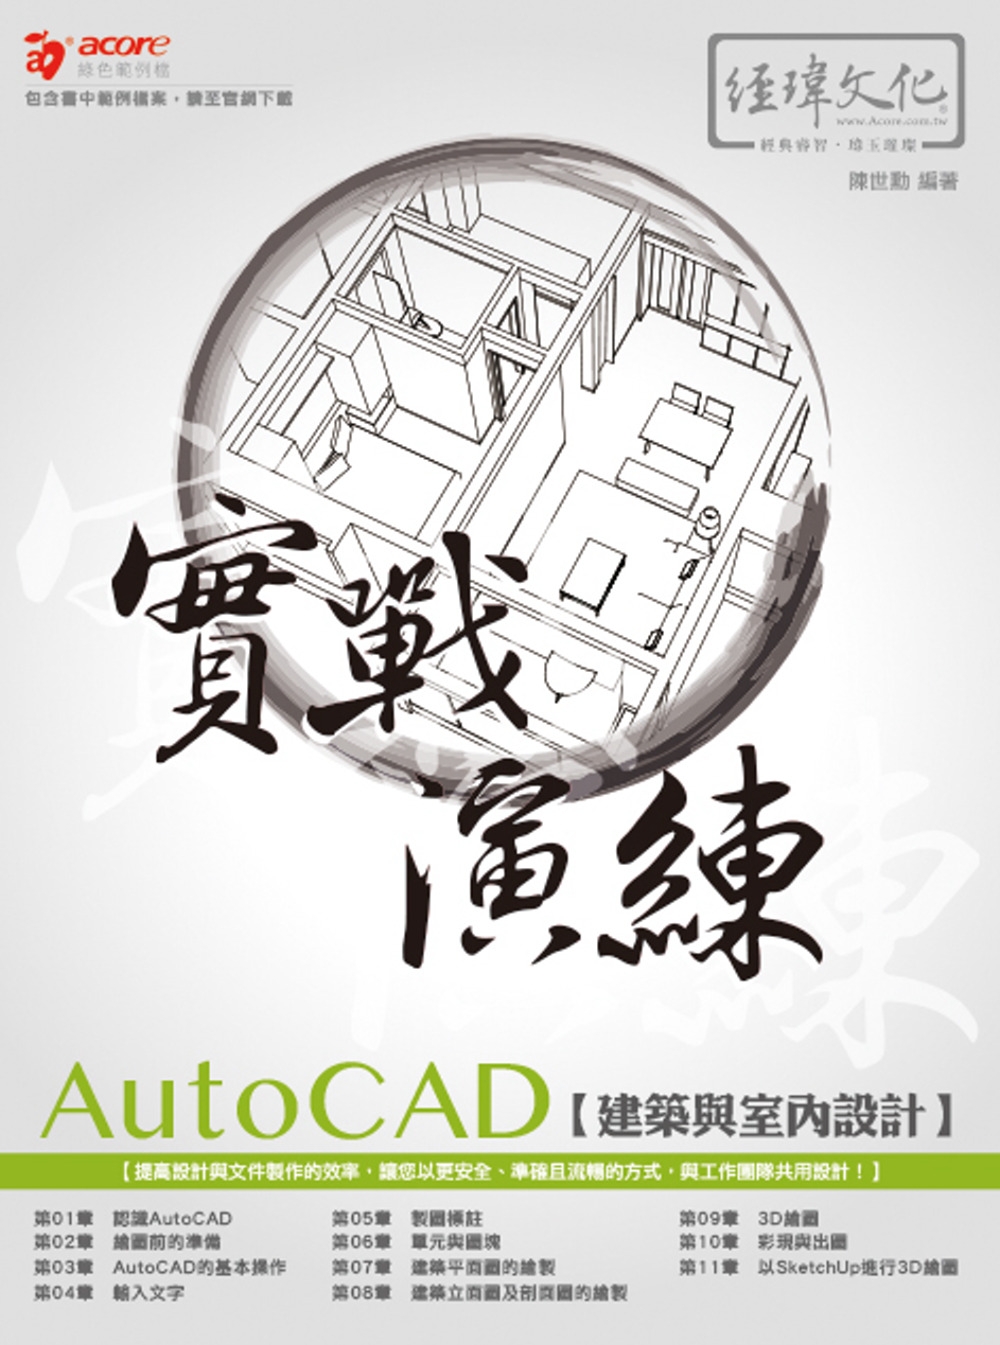 AutoCAD 建築與室內設計 實戰演練